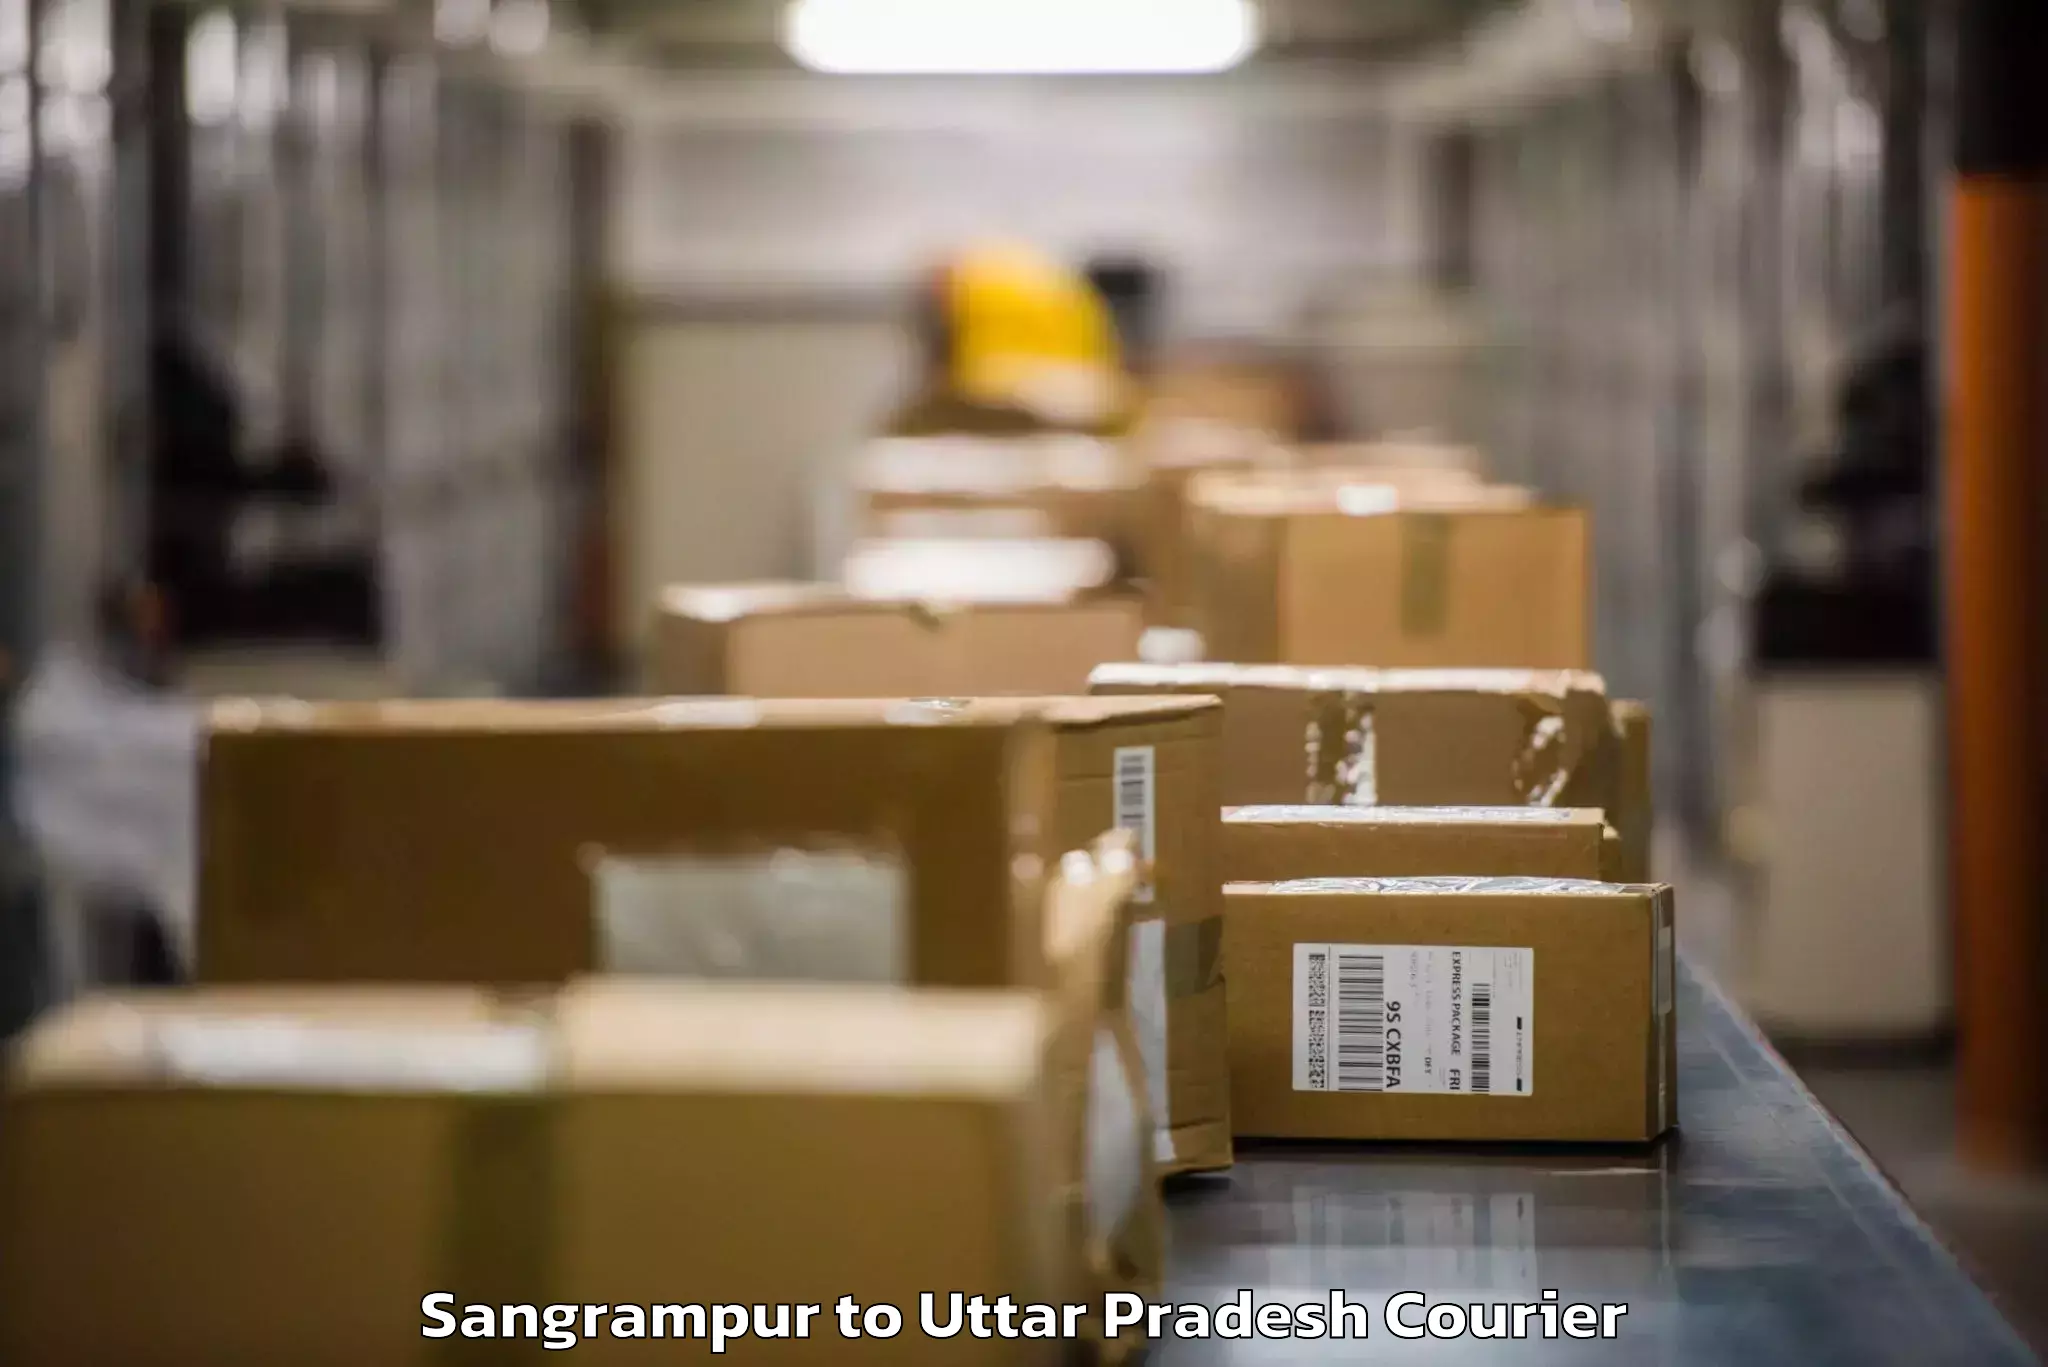 Door-to-door baggage service Sangrampur to Mawana